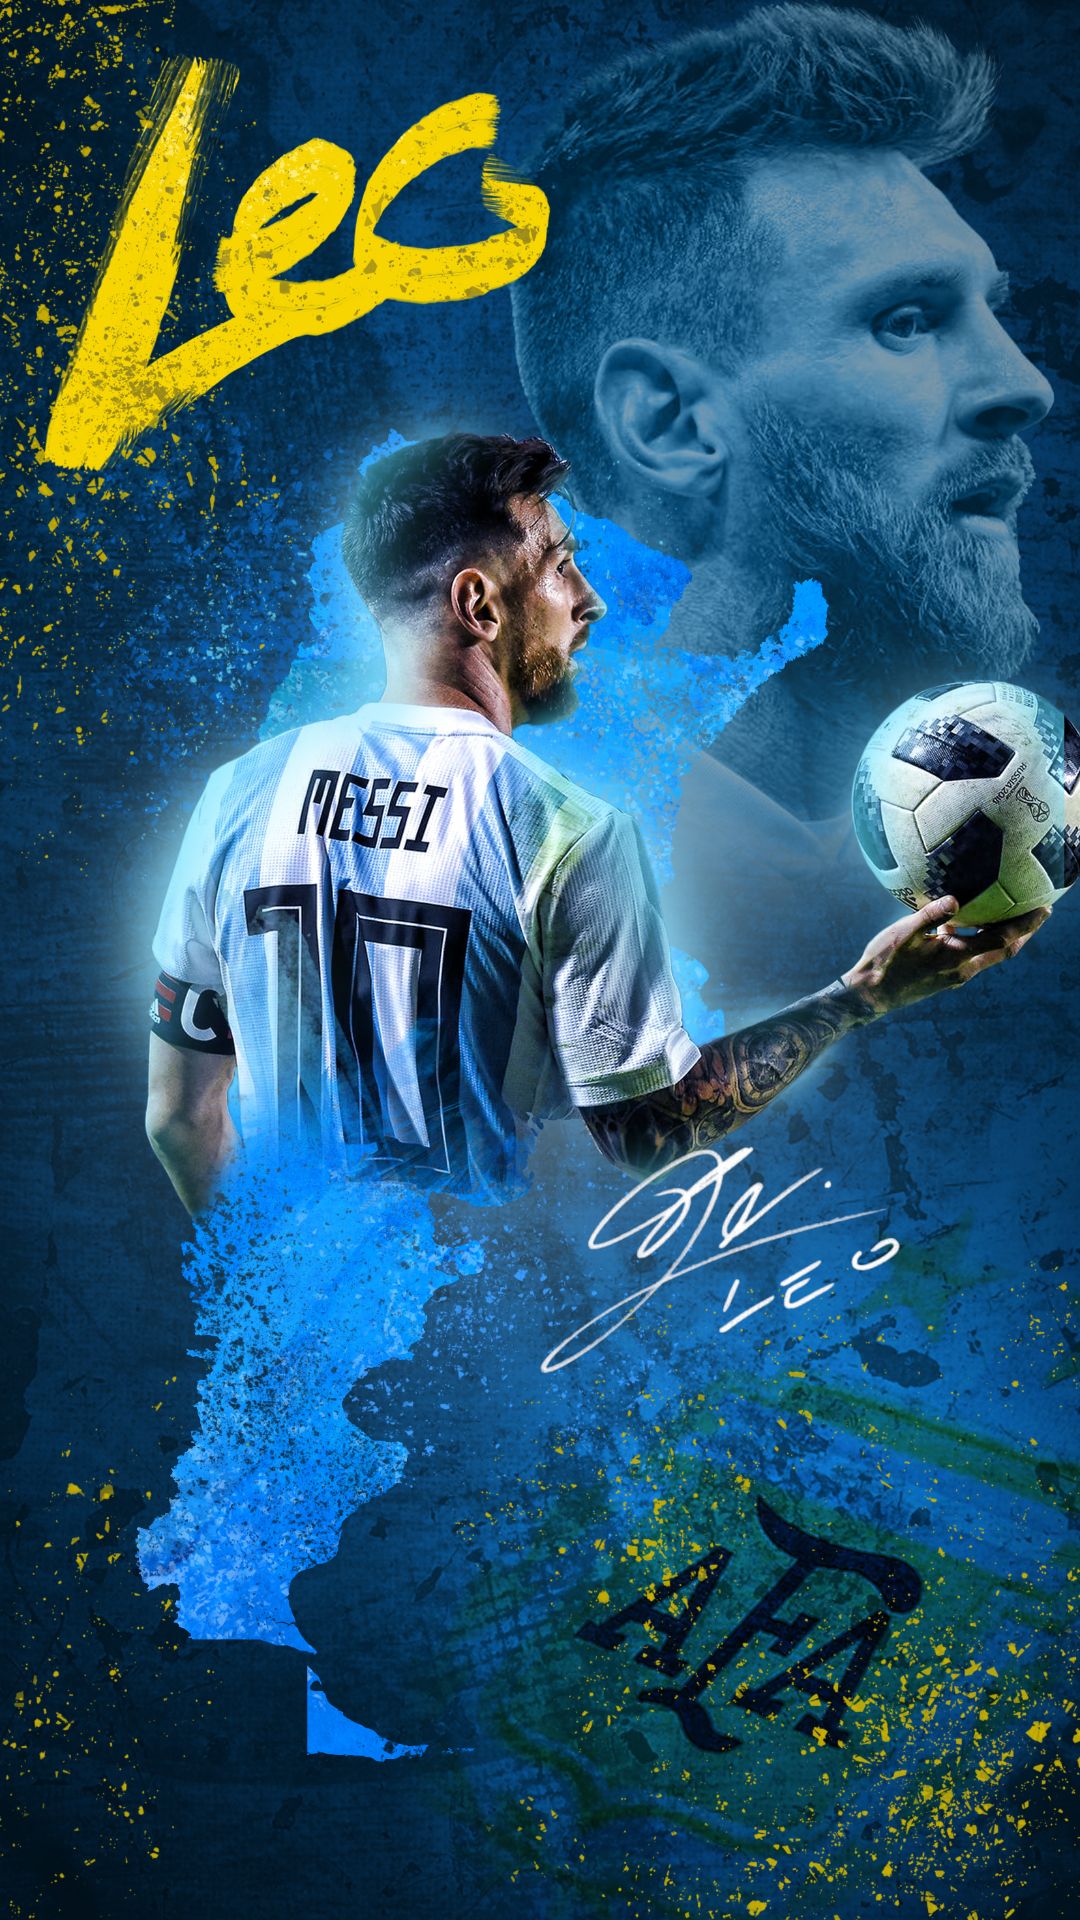 Messi là một trong những cầu thủ tài năng nhất trong lịch sử bóng đá thế giới. Anh là nguồn cảm hứng cho rất nhiều người yêu bóng đá. Hãy xem hình ảnh về Messi và cảm nhận sự tuyệt vời của anh ta trên sân cỏ.